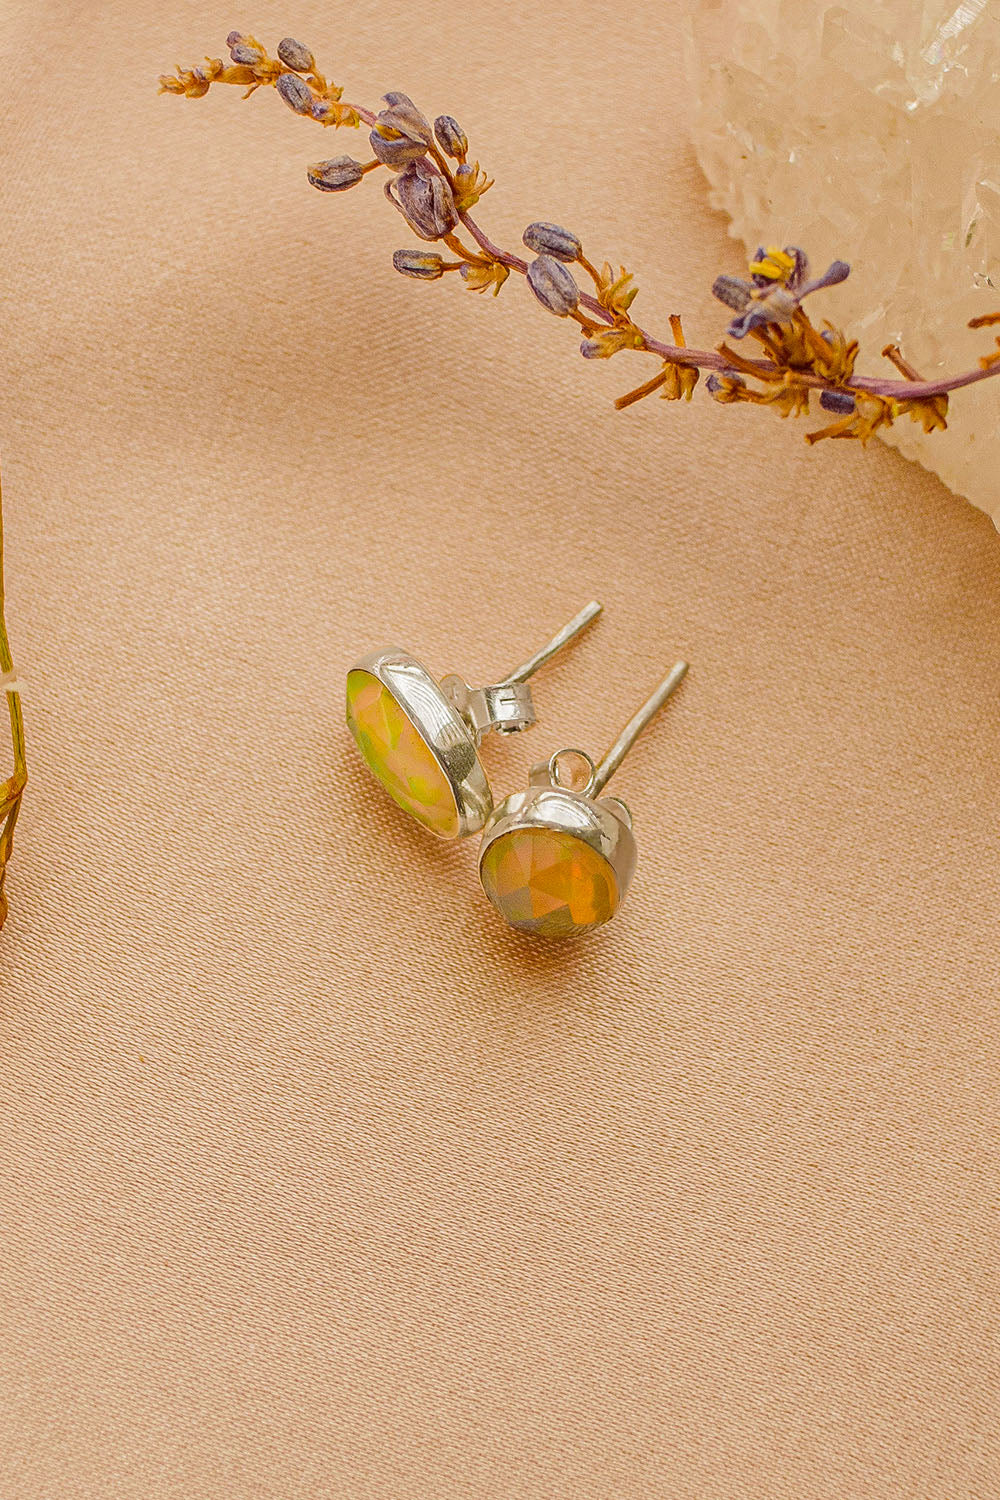 Sivalya Fire Opal Studs Post Earrings